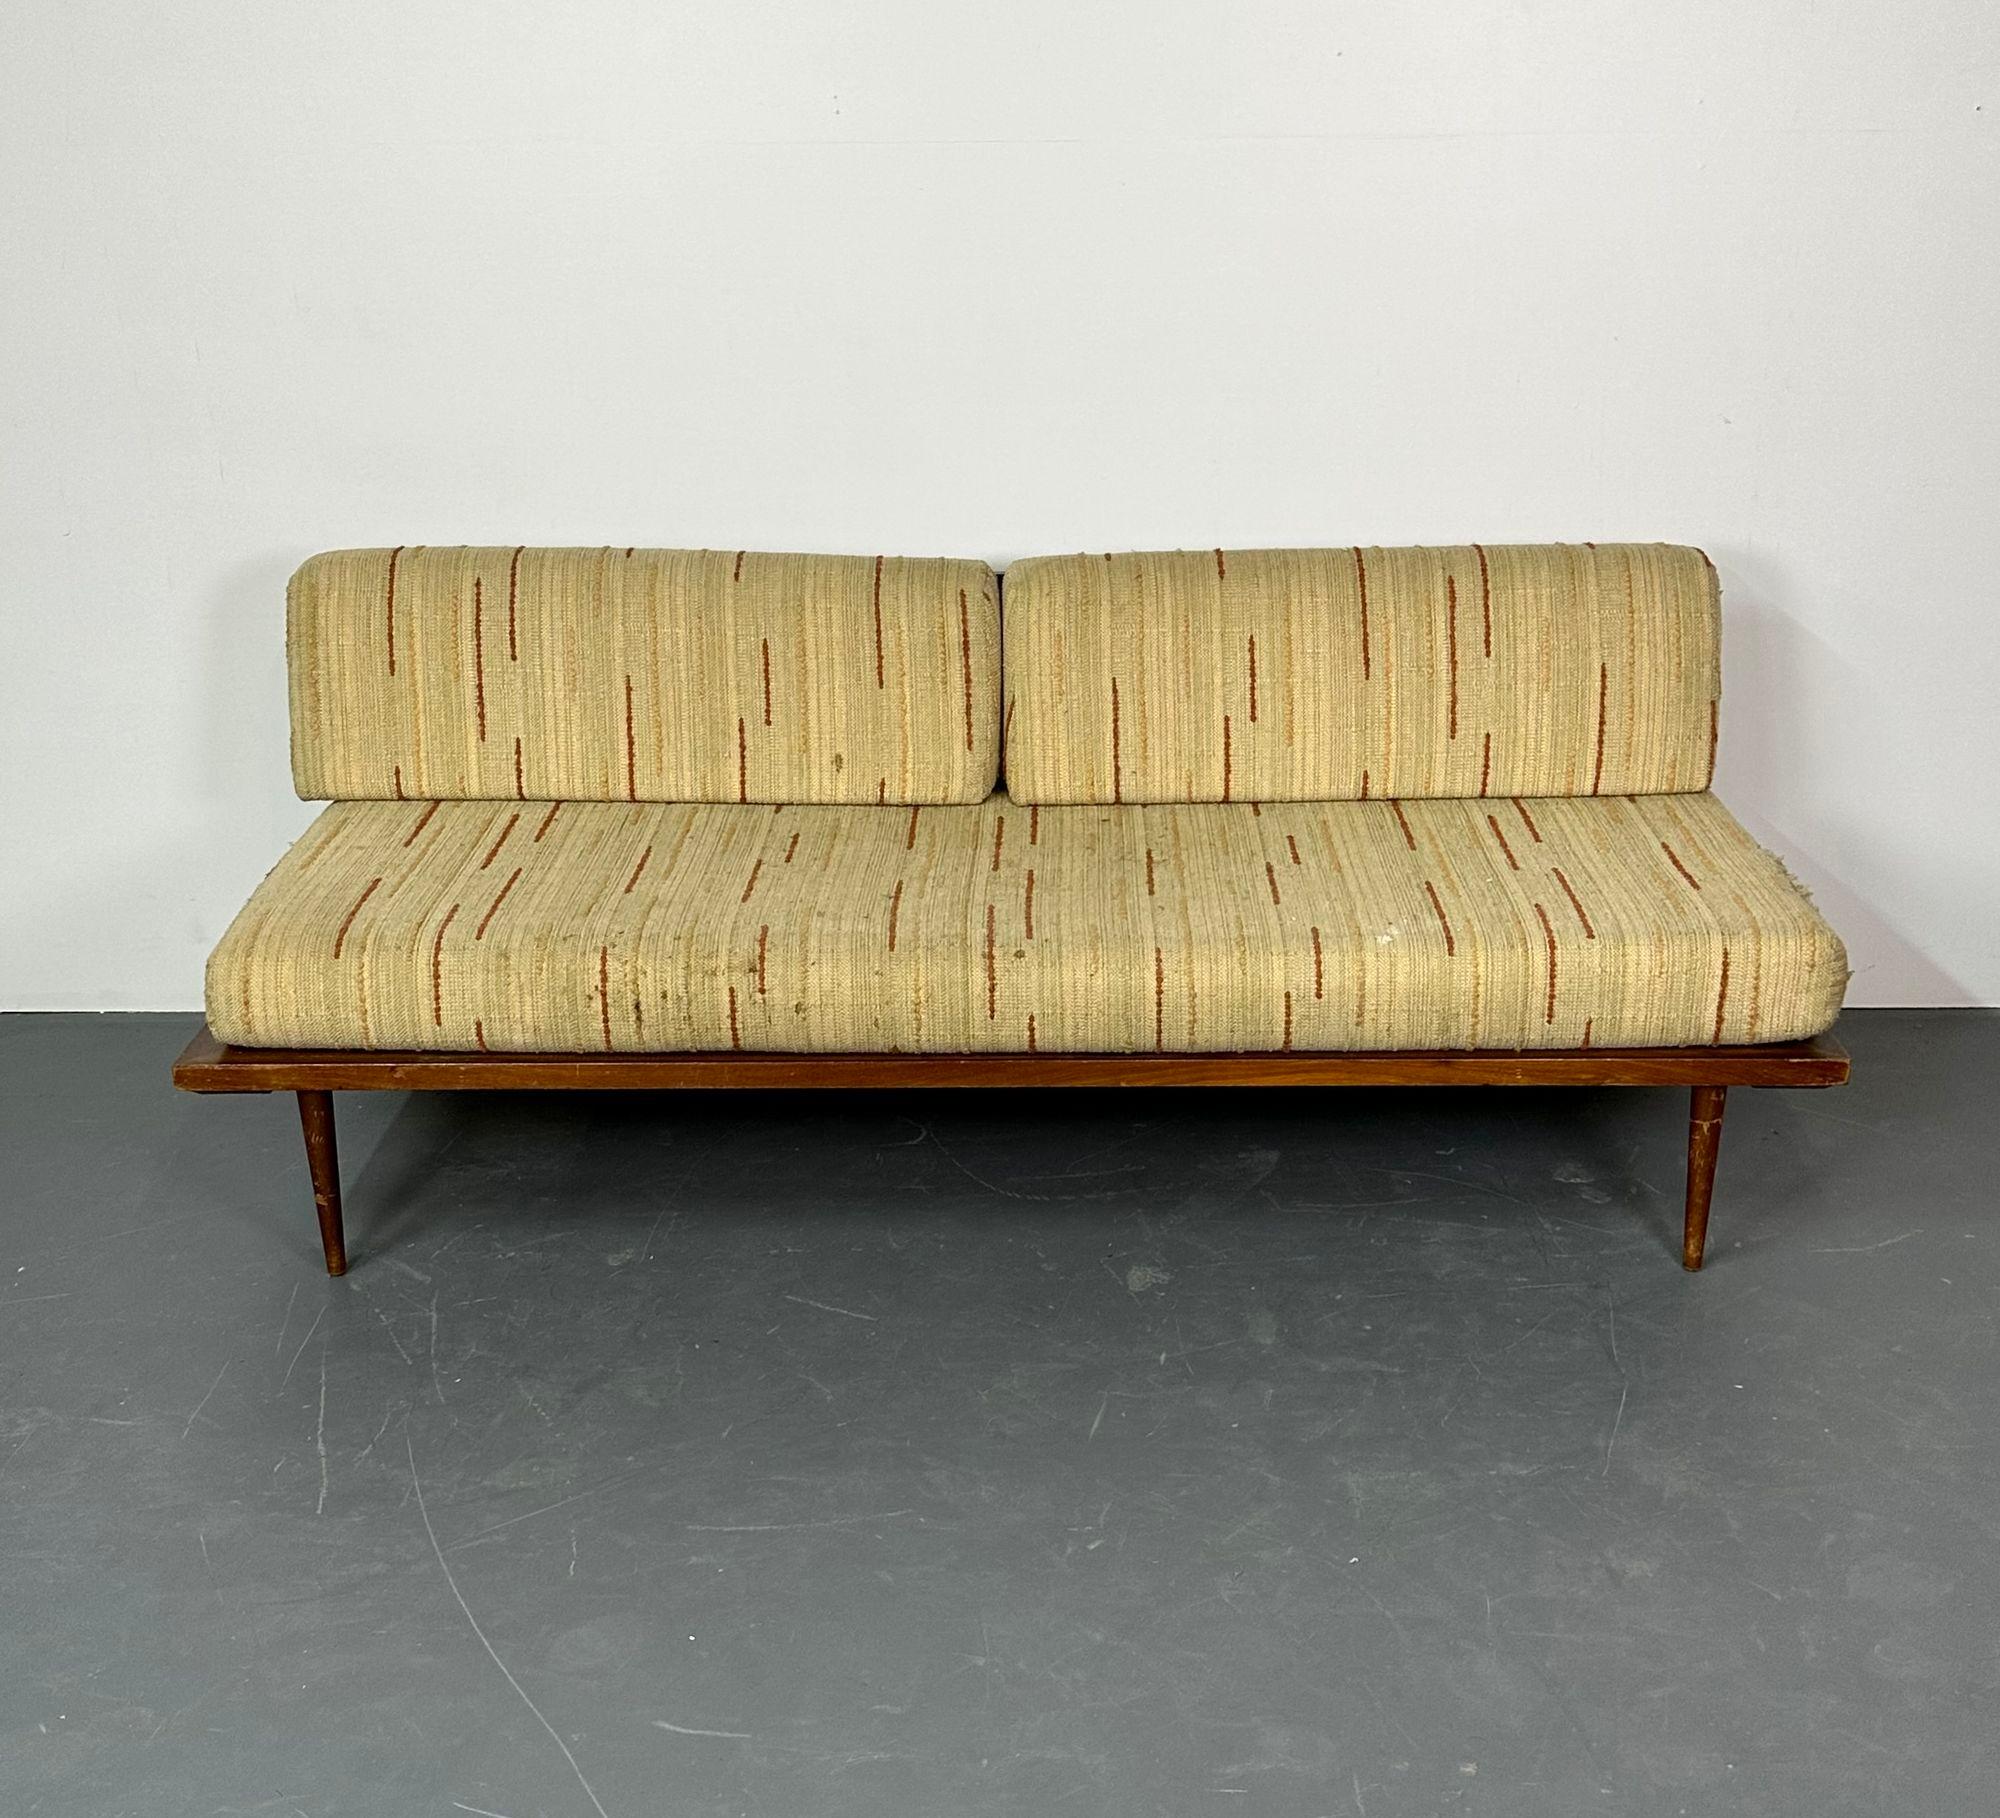 Canapé / lit de repos Peter Hvidt & Orla Molgaard, danois, années 1960
 
Canapé moderne danois de Peter Hvidt & Orla Molgaard. L'ensemble du set est disponible, se renseigner pour un prix supplémentaire. 
 
27.75 H x 75 L x 30 P SH 17.5 pouces